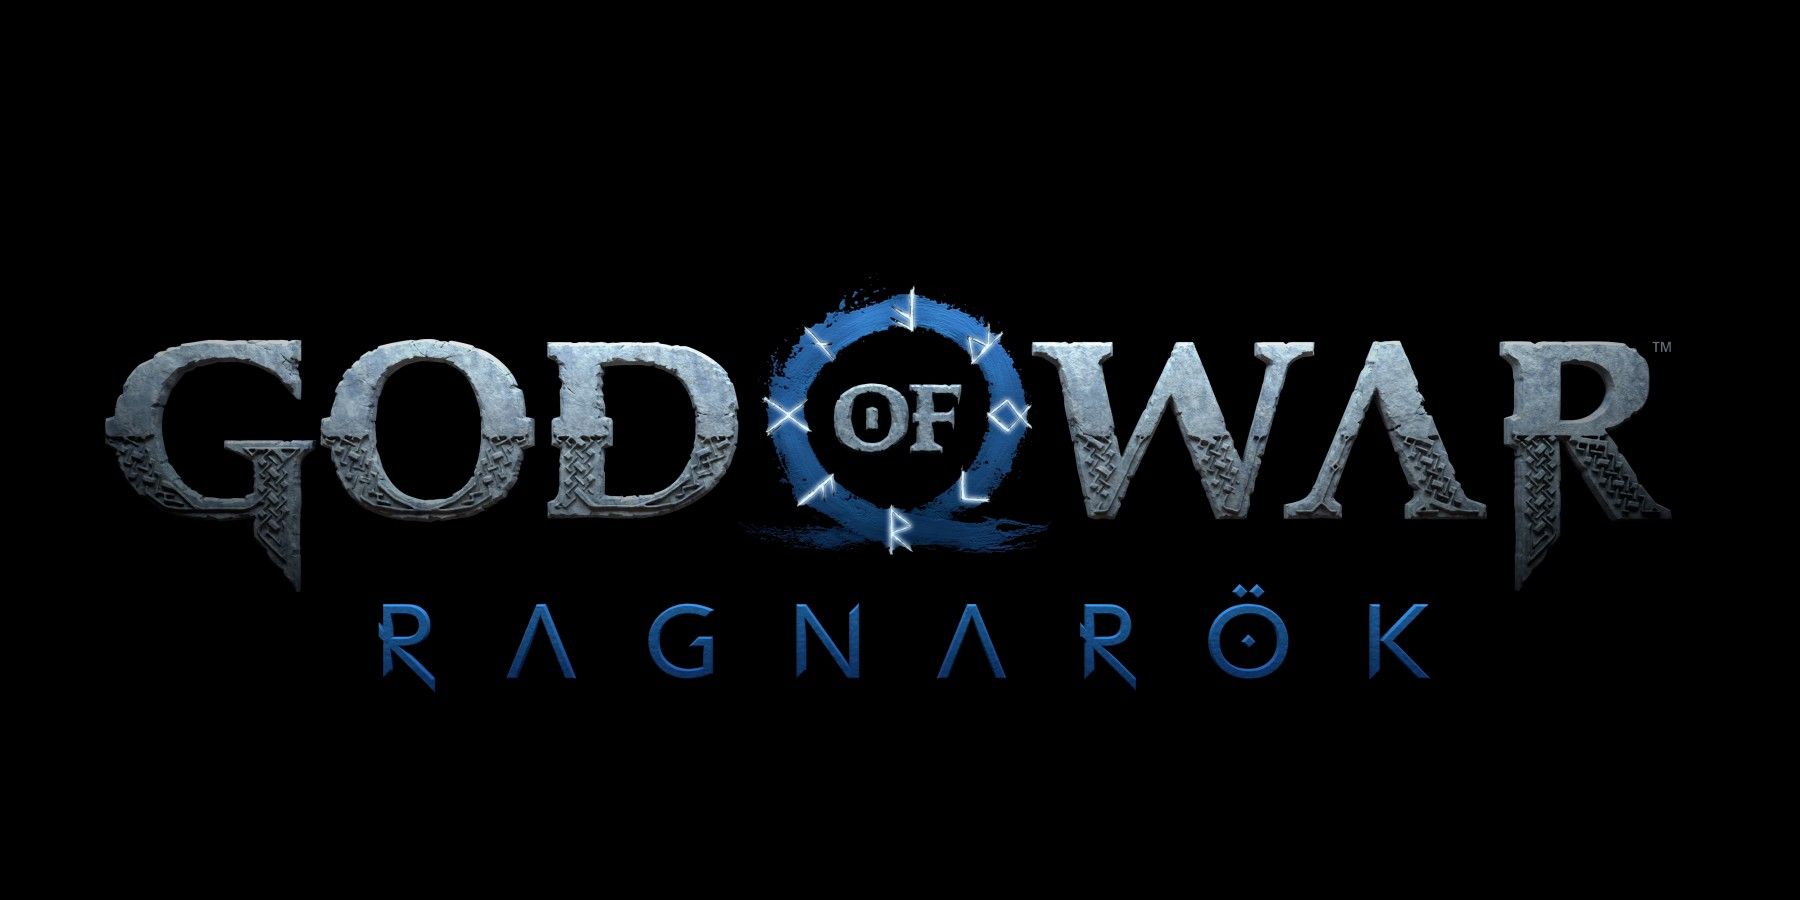 يقول مدير فن God of War Ragnarok “أنت لم تر شيئًا بعد”